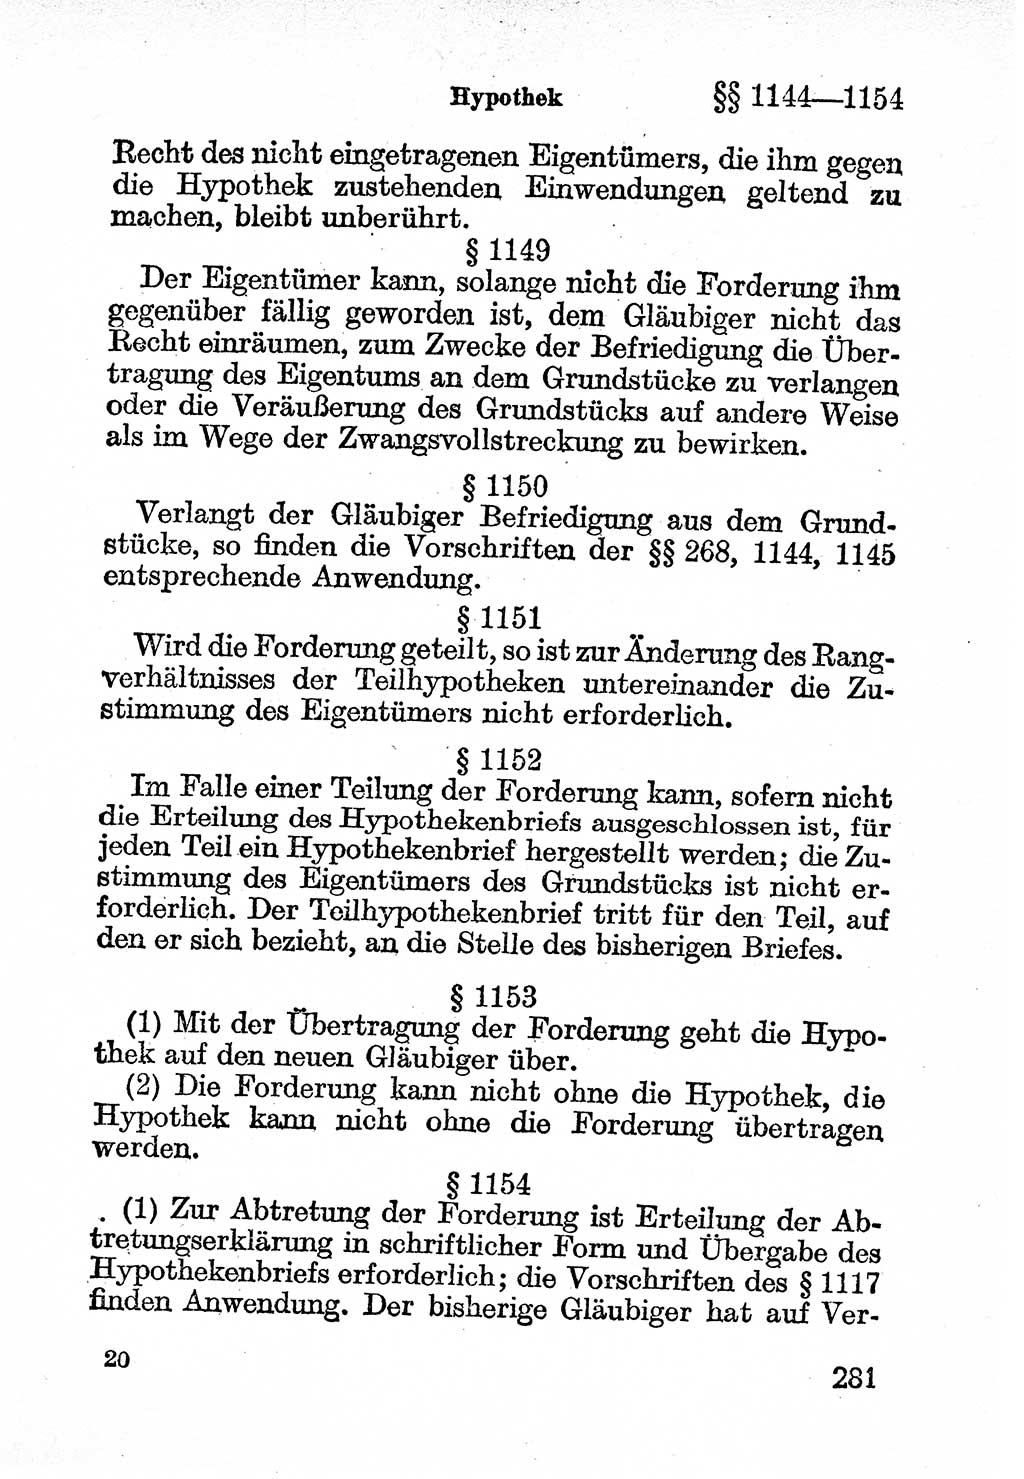 Bürgerliches Gesetzbuch (BGB) nebst wichtigen Nebengesetzen [Deutsche Demokratische Republik (DDR)] 1956, Seite 281 (BGB Nebenges. DDR 1956, S. 281)